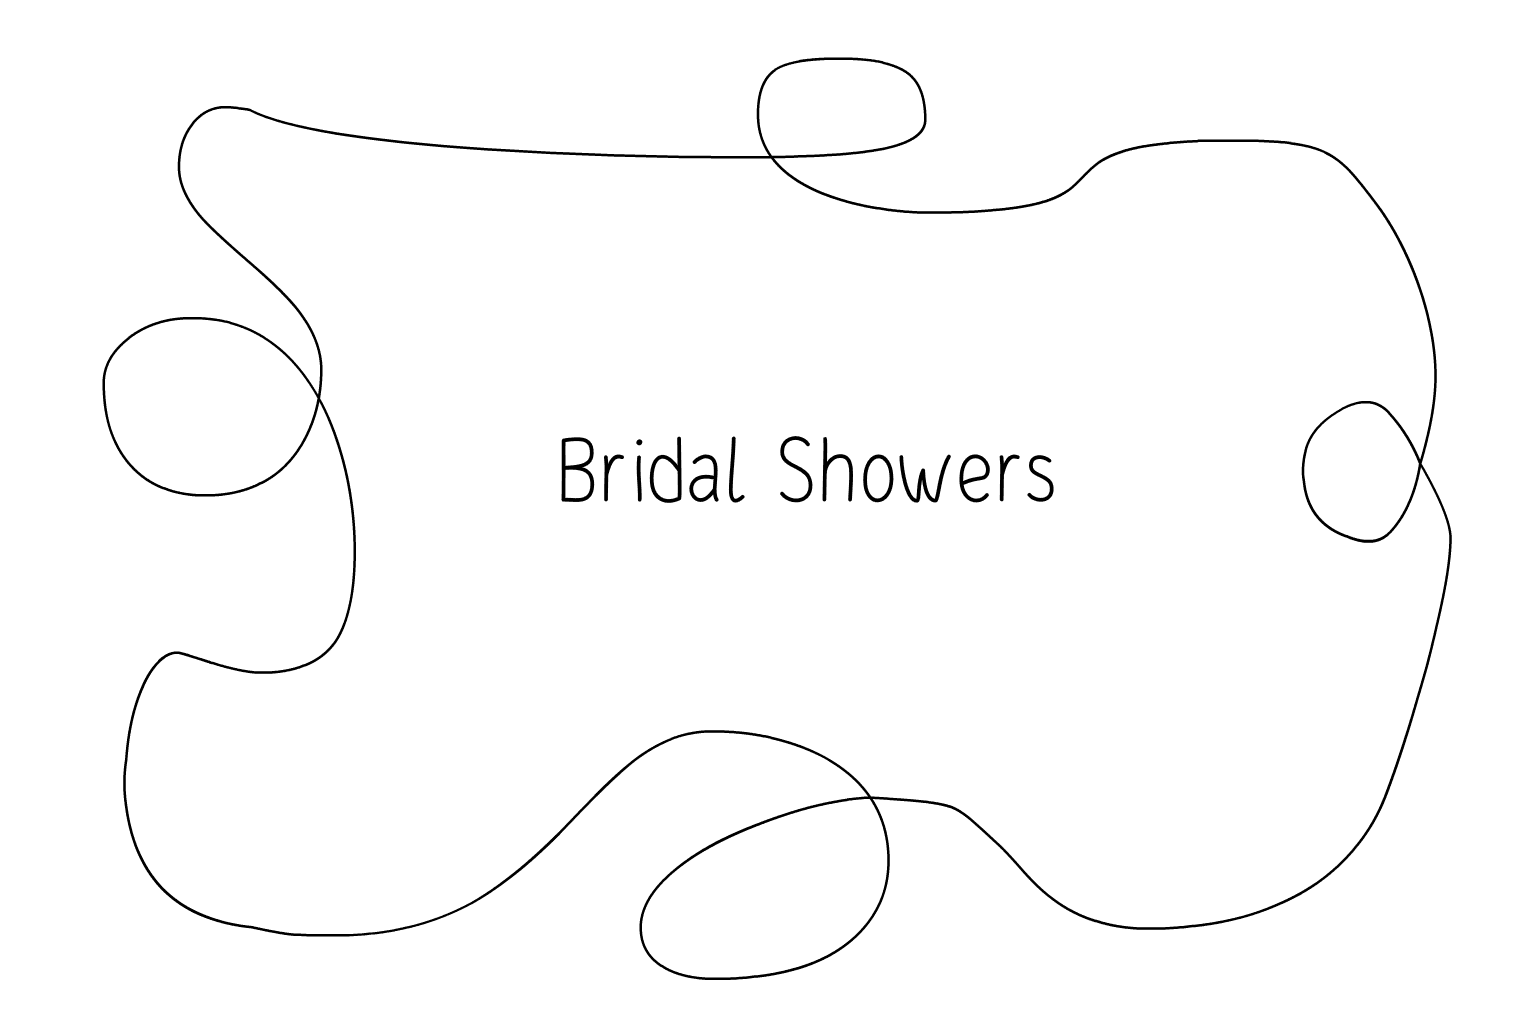 Illustration of Bridal Shower